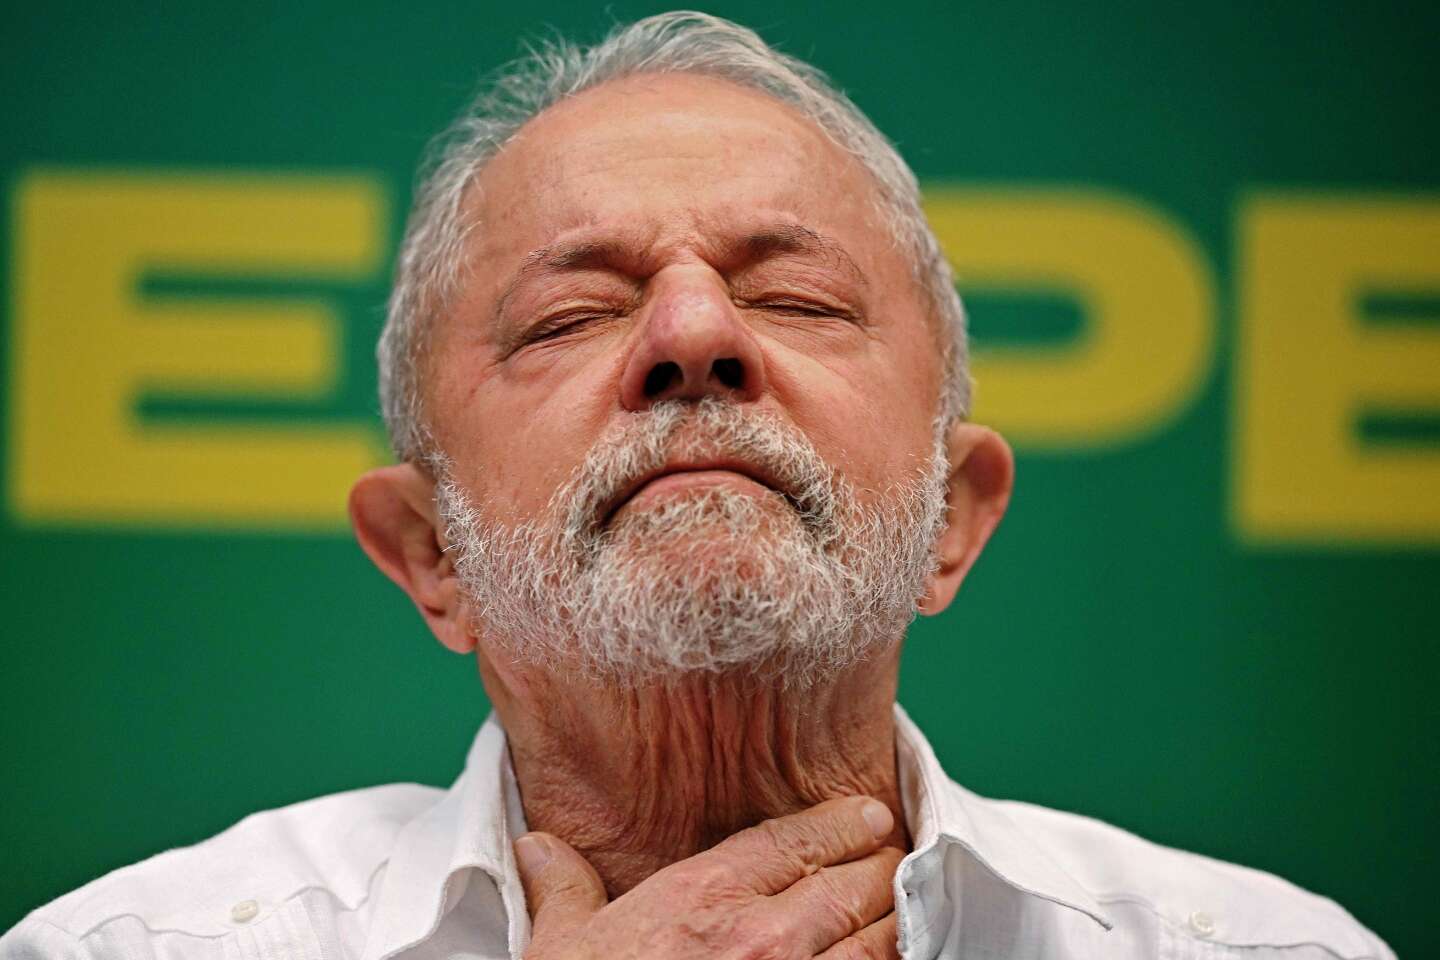 Le président Lula reporte sa visite en Chine en raison d’une pneumonie